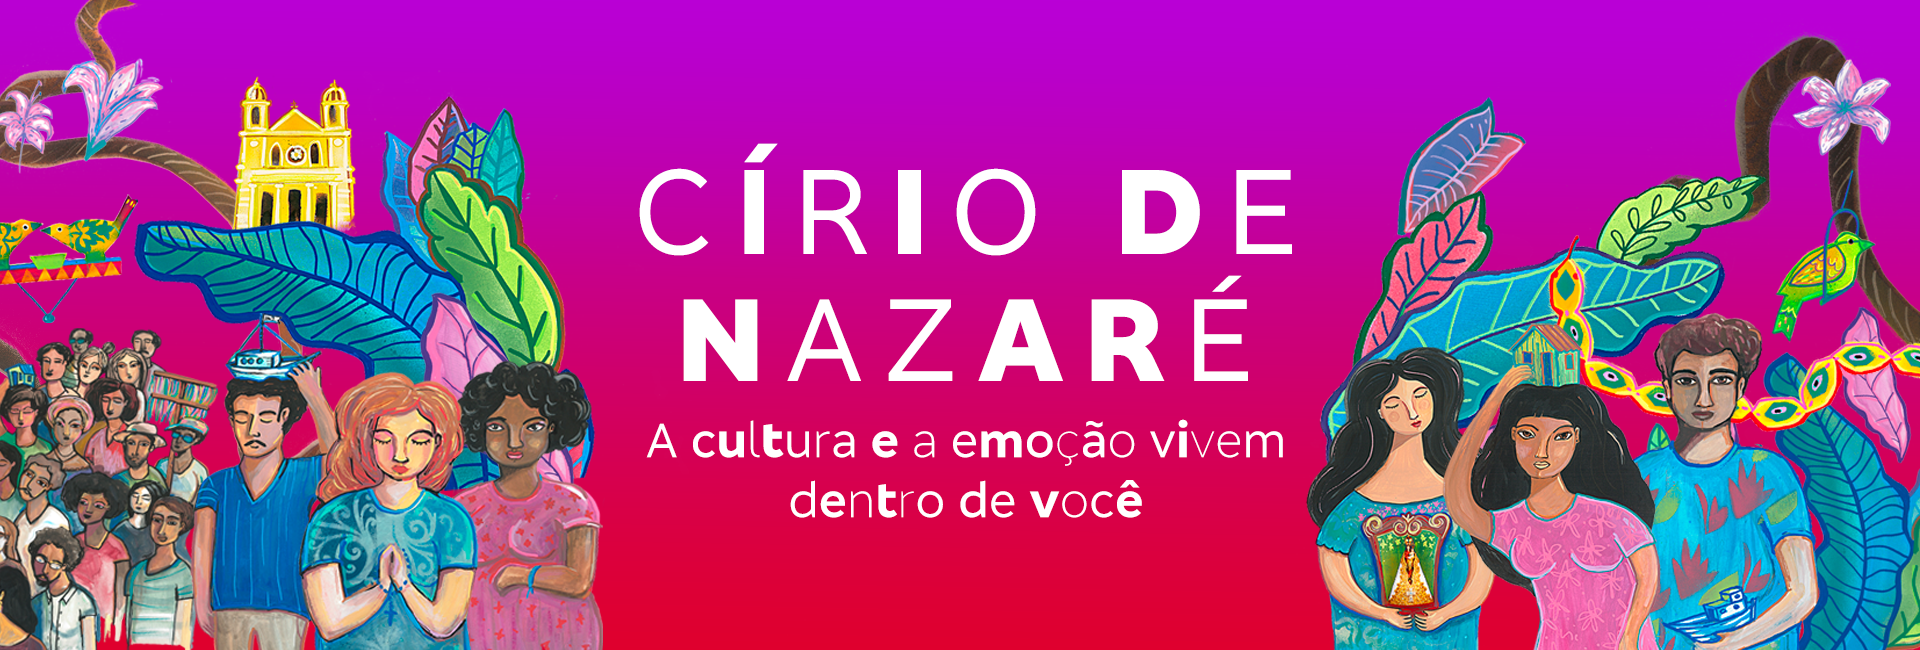 Círio de Nazaré – A Cultura e a emoção vivem dentro de você